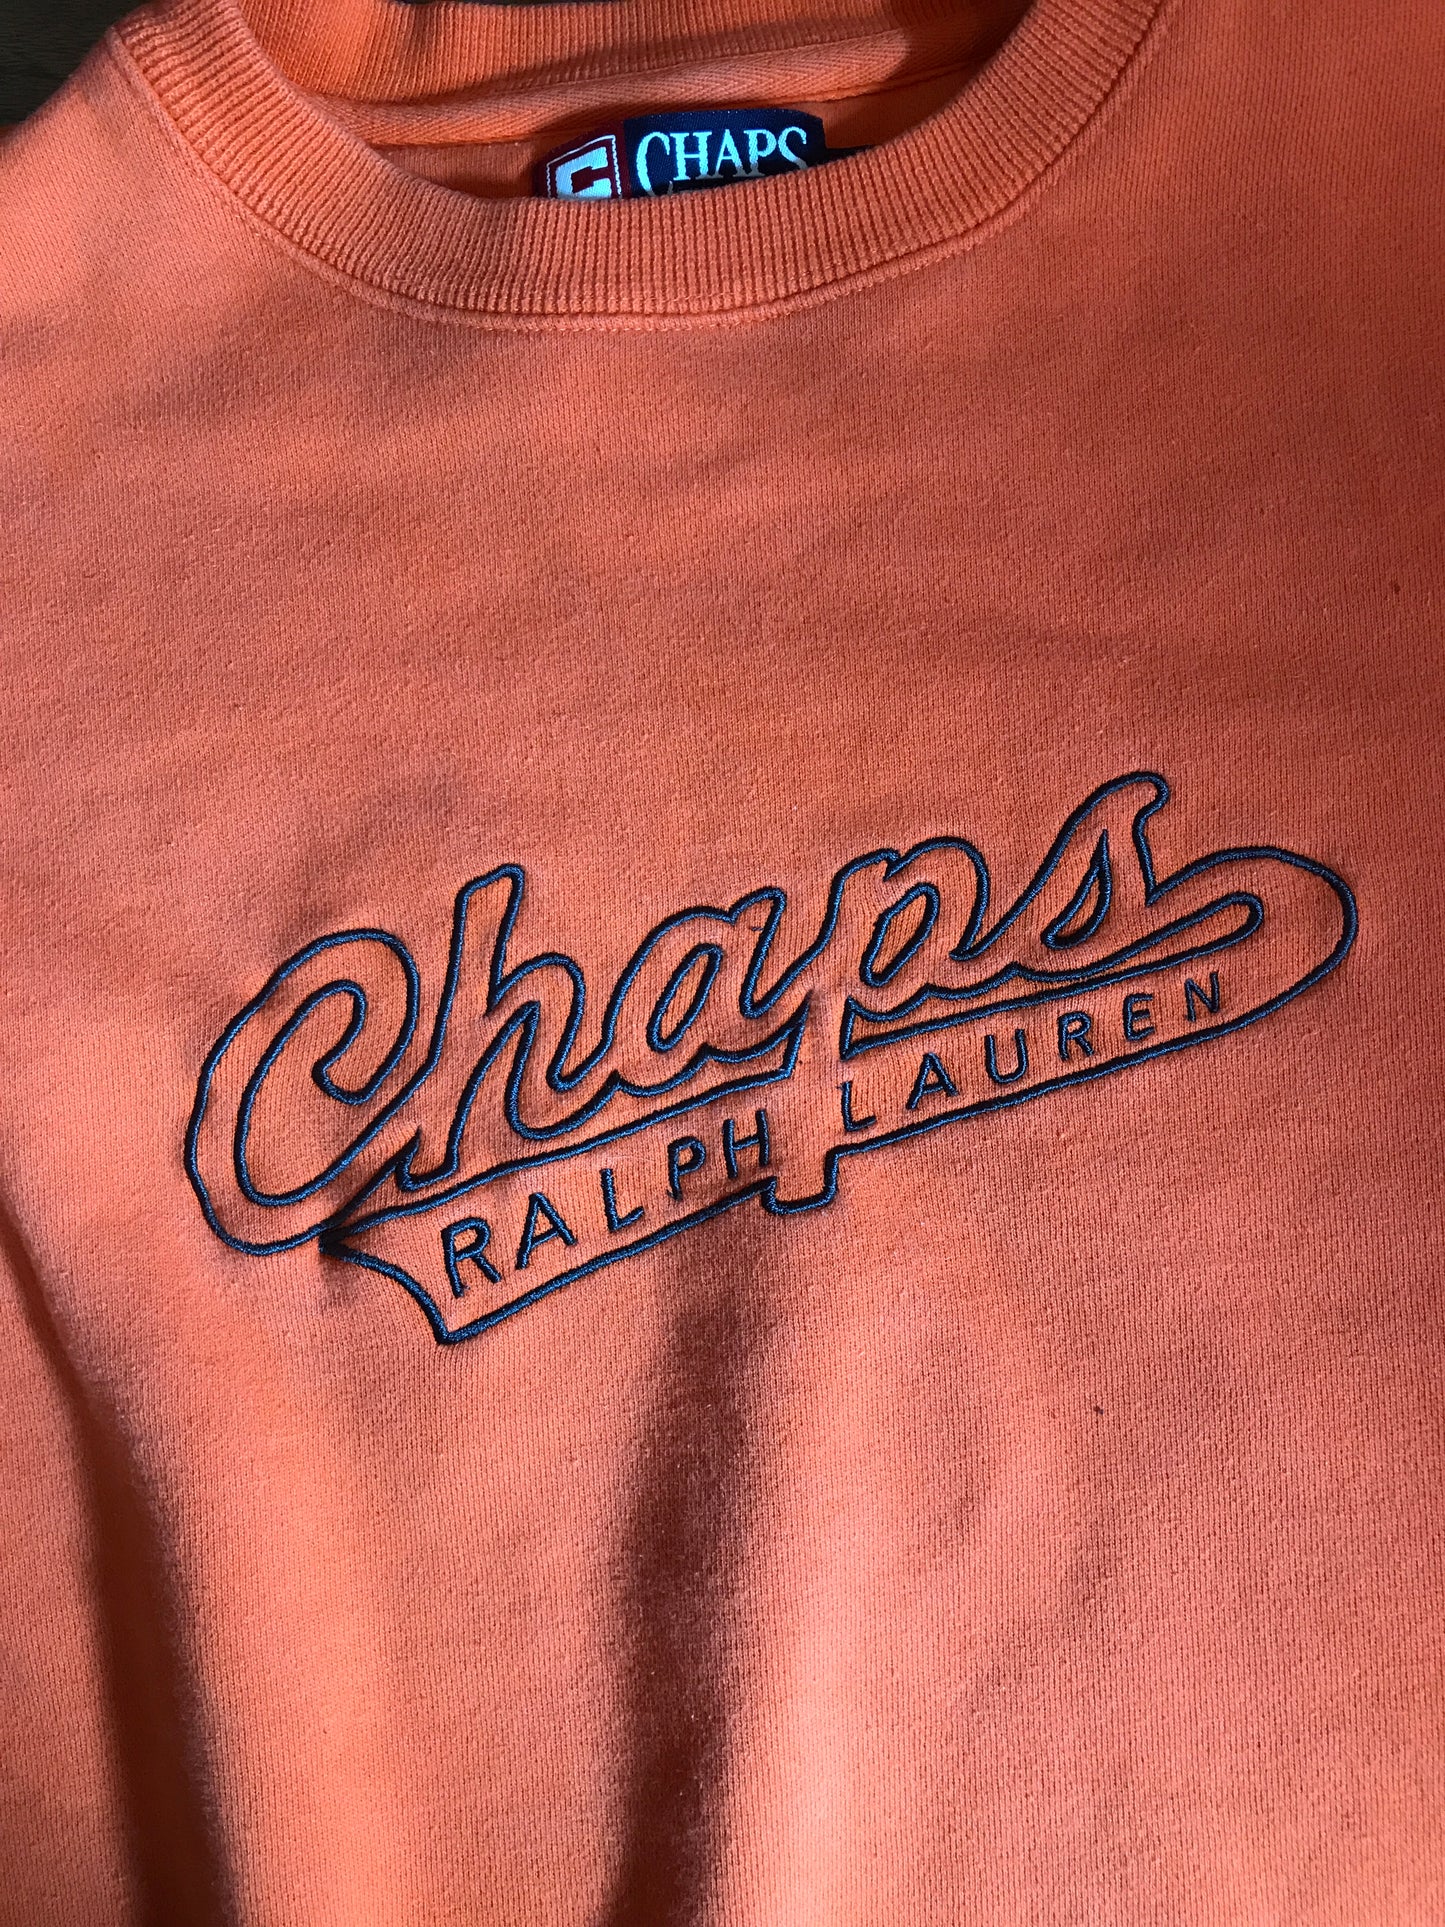 Champs Ralph Lauren Sweatshirt